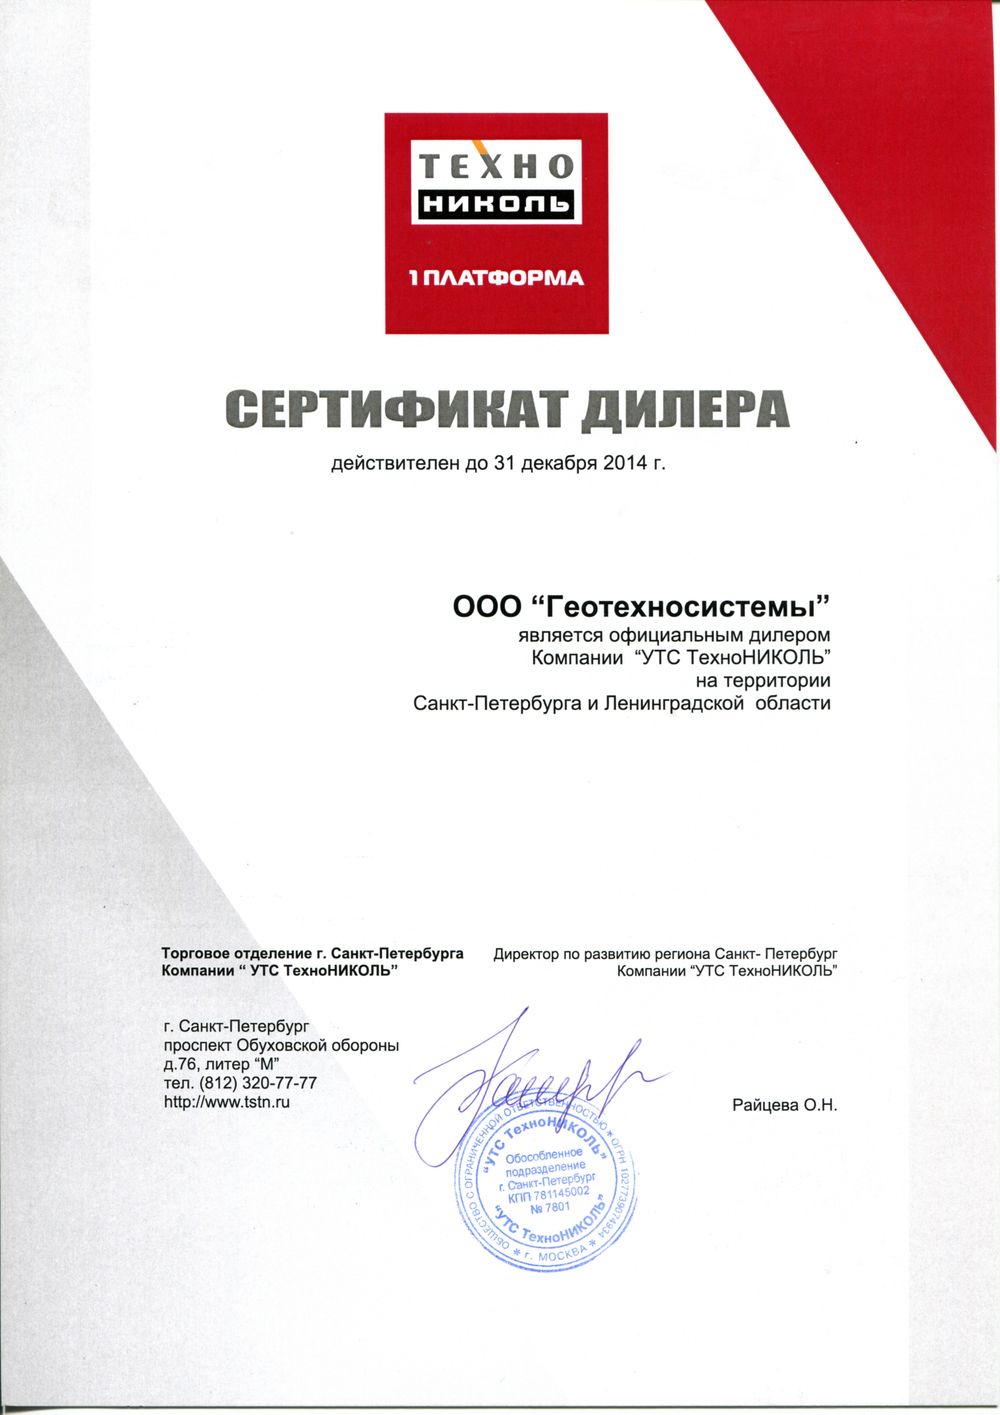 сертификат ТехноНИКОЛЬ